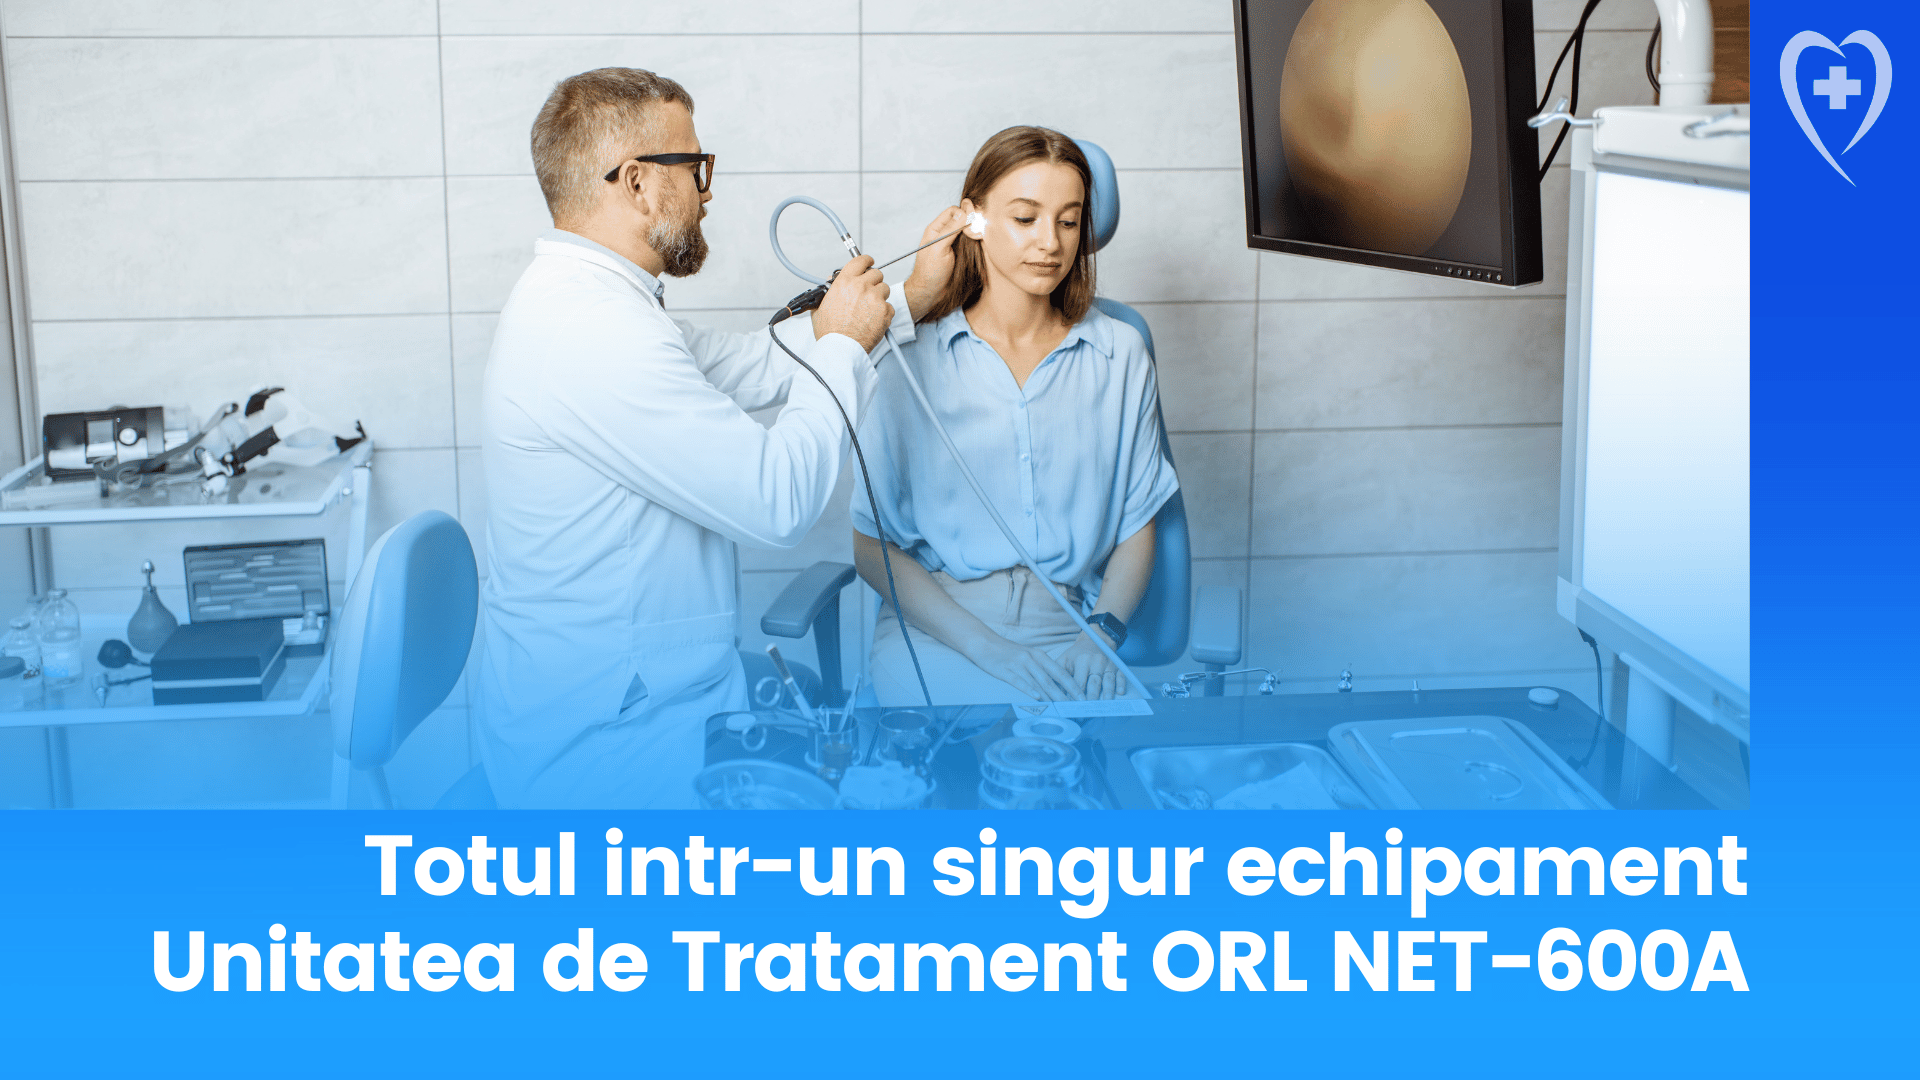 Totul într-un singur echipament - Despre Unitatea de Tratament ORL NET-600A